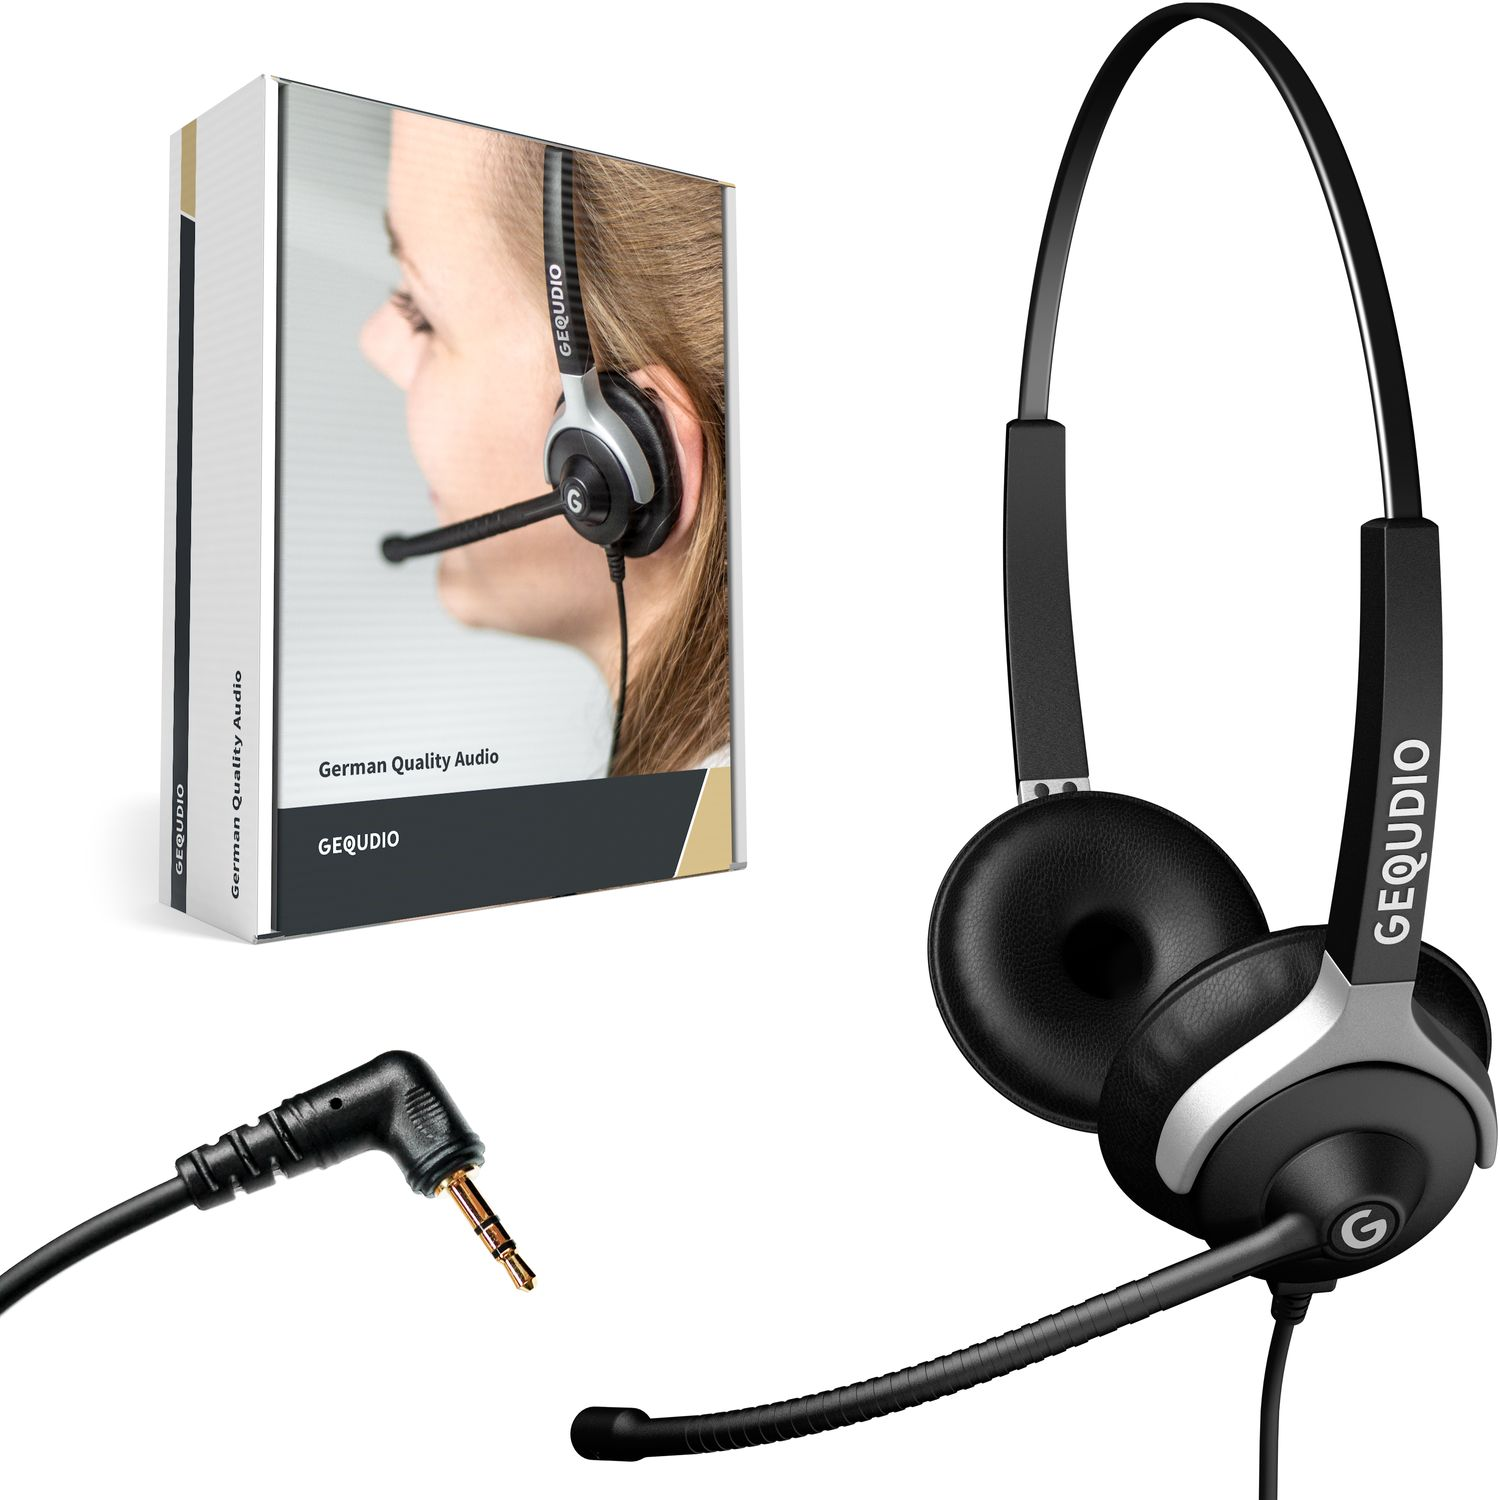 GEQUDIO Headset 2-Ohr mit 2,5mm On-ear Schwarz Klinke, Headset